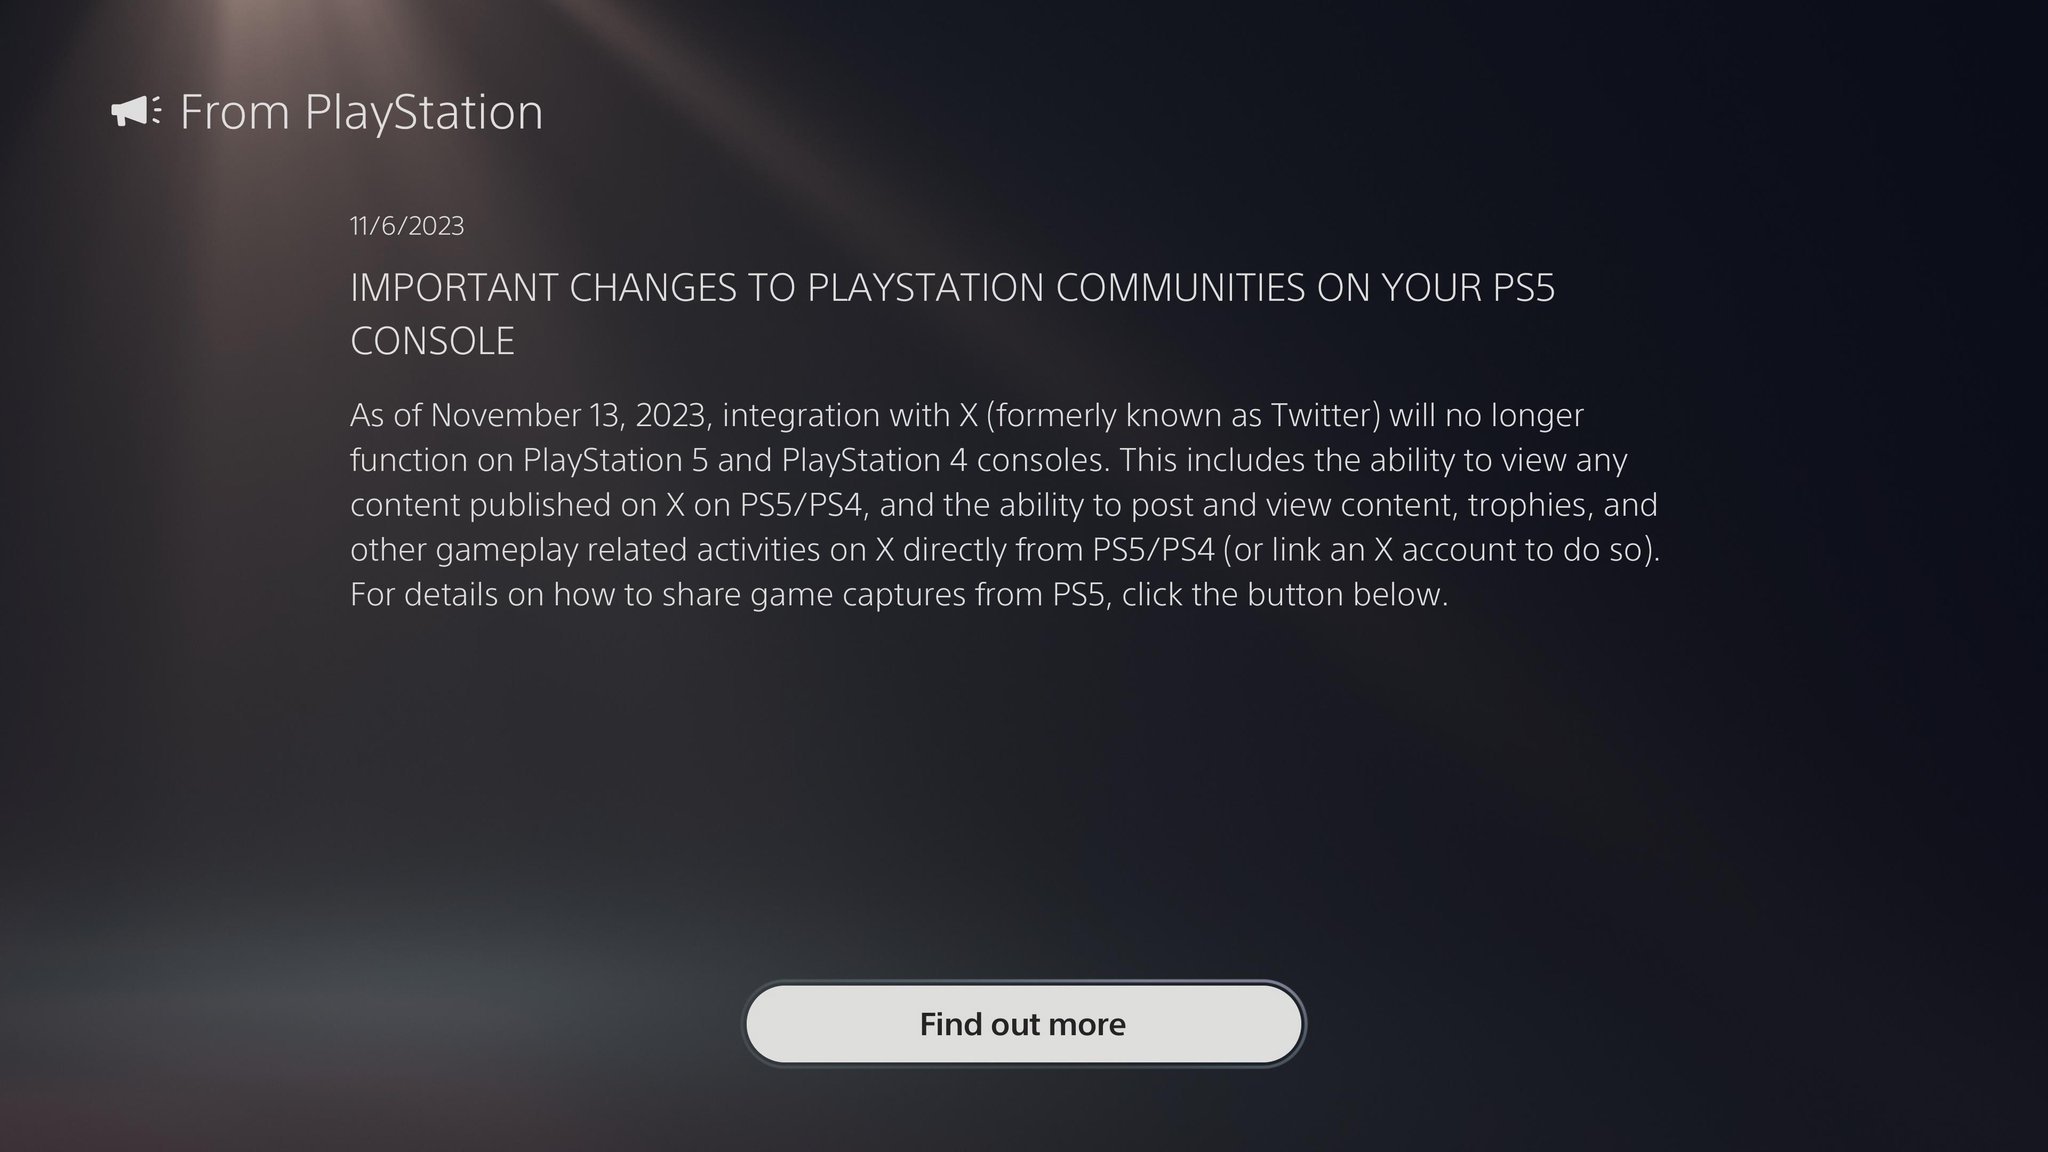 
          Sony сообщила, когда на PS4 и PS5 прекратится поддержка X (Twitter). Эта функция позволяет делиться скриншотами
        